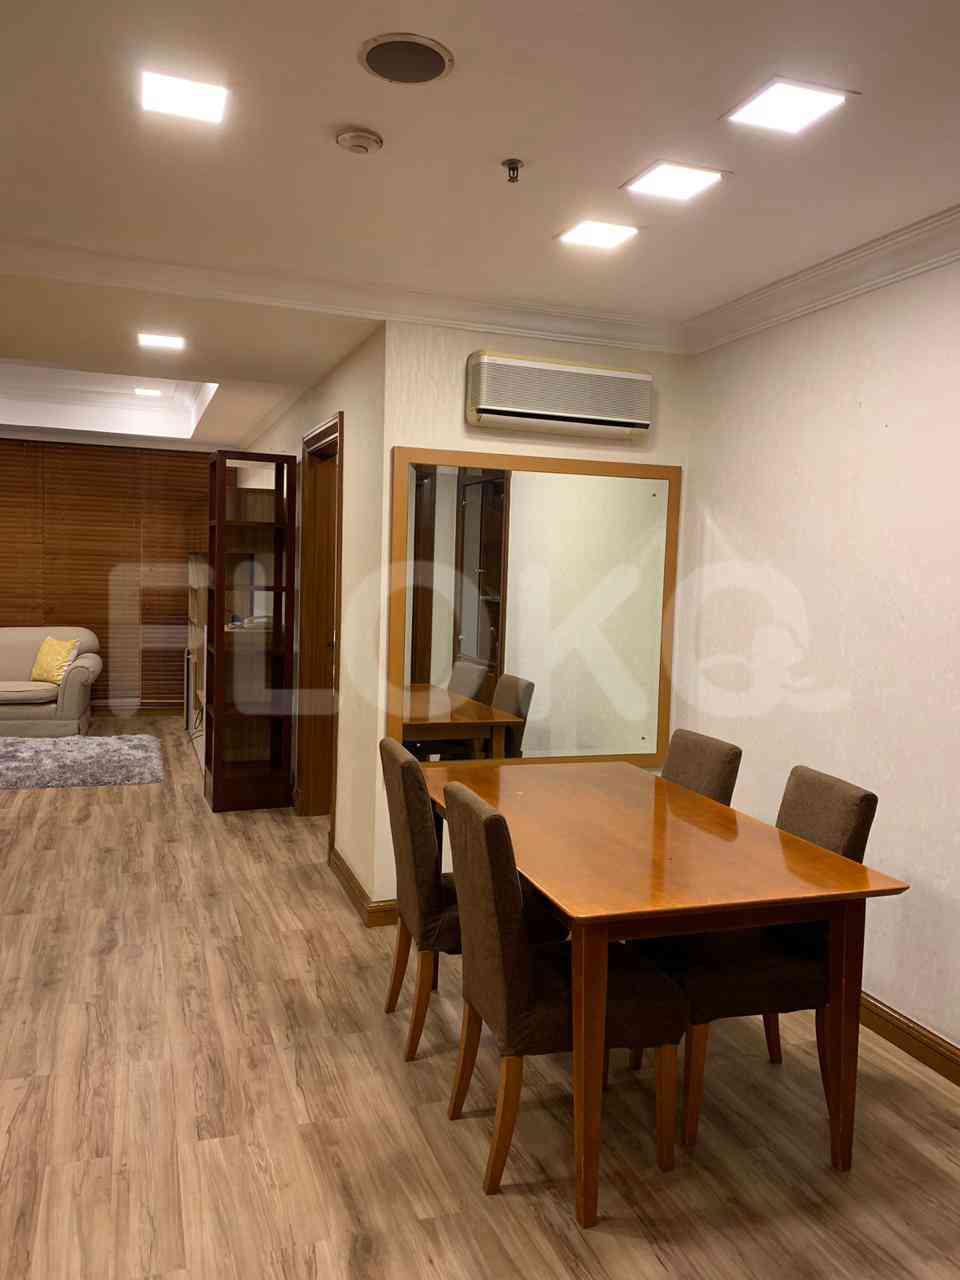 4 Bedroom on 10th Floor for Rent in Puri Imperium Apartment - fkua44 1